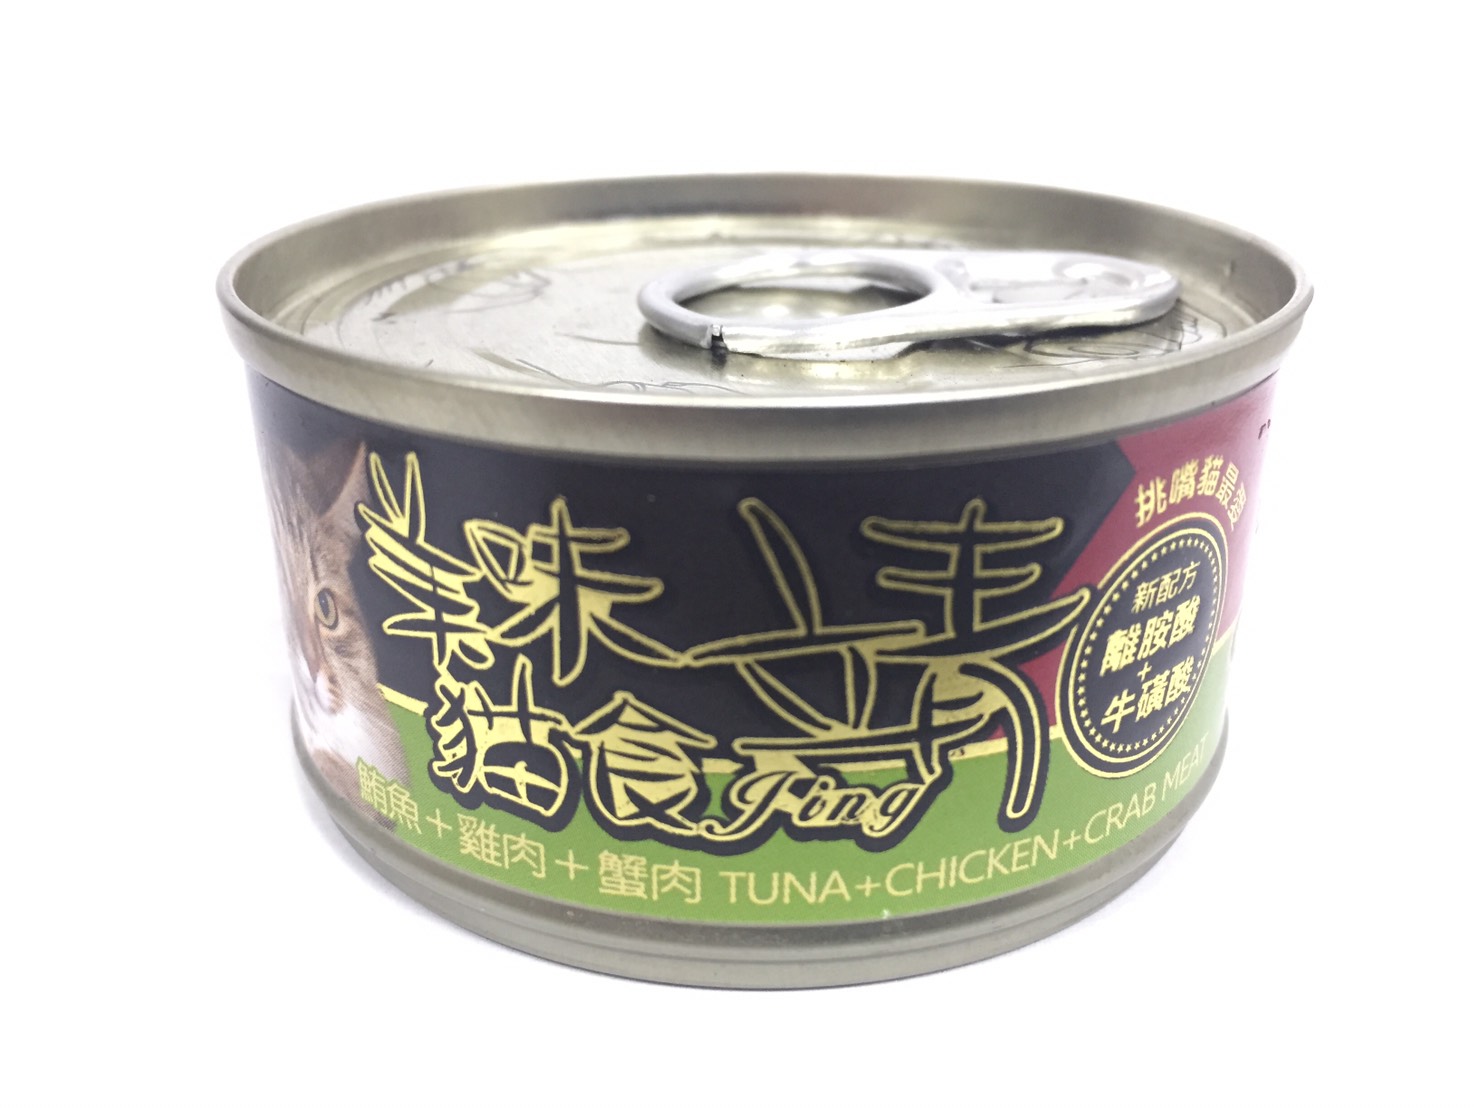 靖特級貓罐-鮪魚+雞肉+蟹肉
Jing cat can-tuna+chicken+crab meat